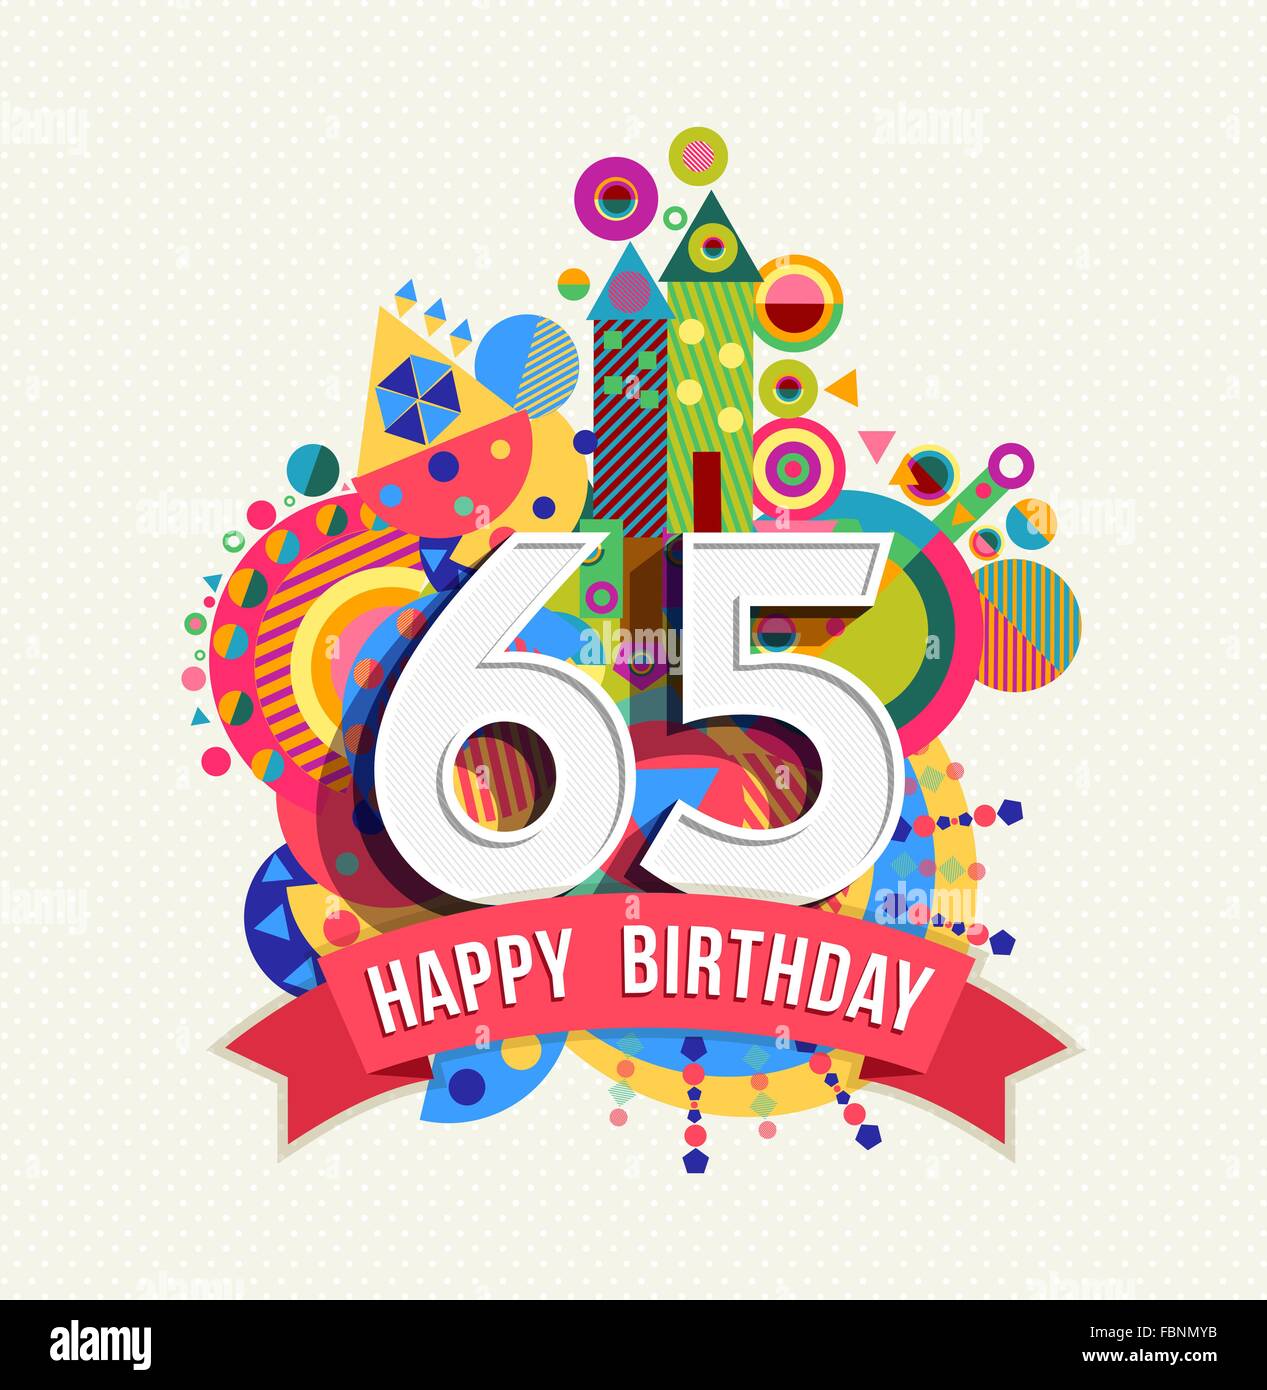 Joyeux anniversaire 65 ans 65 ans, carte de souhaits fête amusante avec étiquette de texte, nombre et géométrie colorée design. EPS10 Illustration de Vecteur